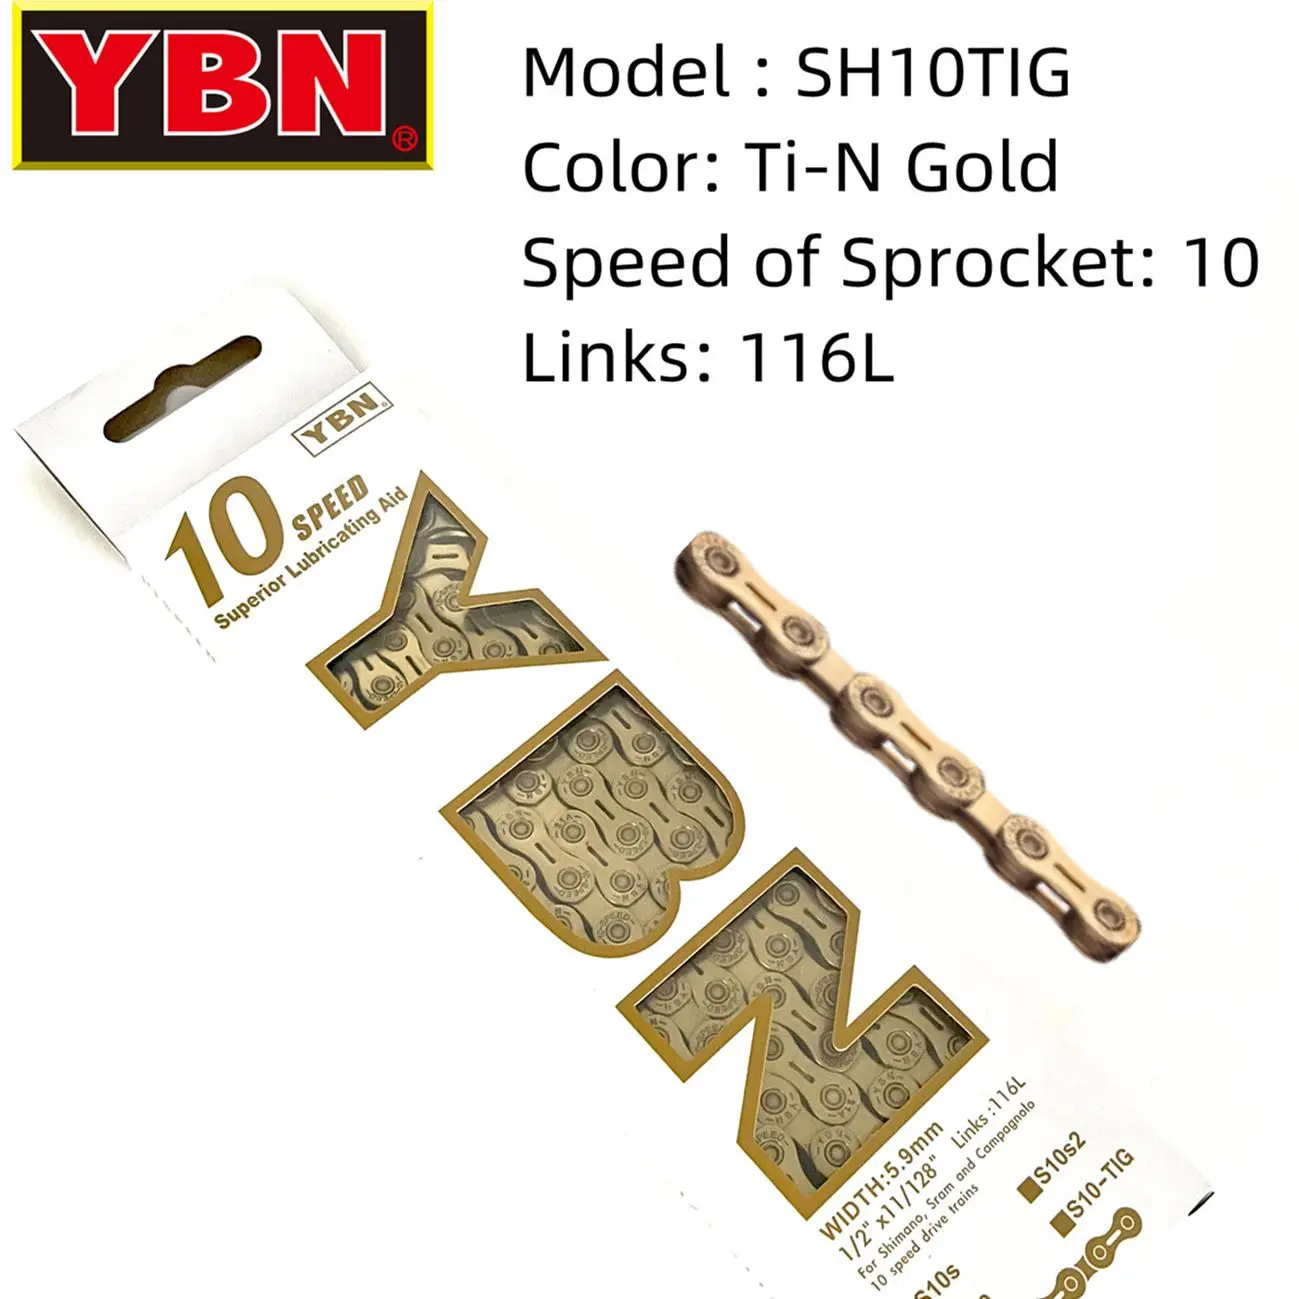 

Универсальная Цепь YBN SH10TIG, полуполая цепь, 116L, 10 скоростей, для горных и шоссейных велосипедов